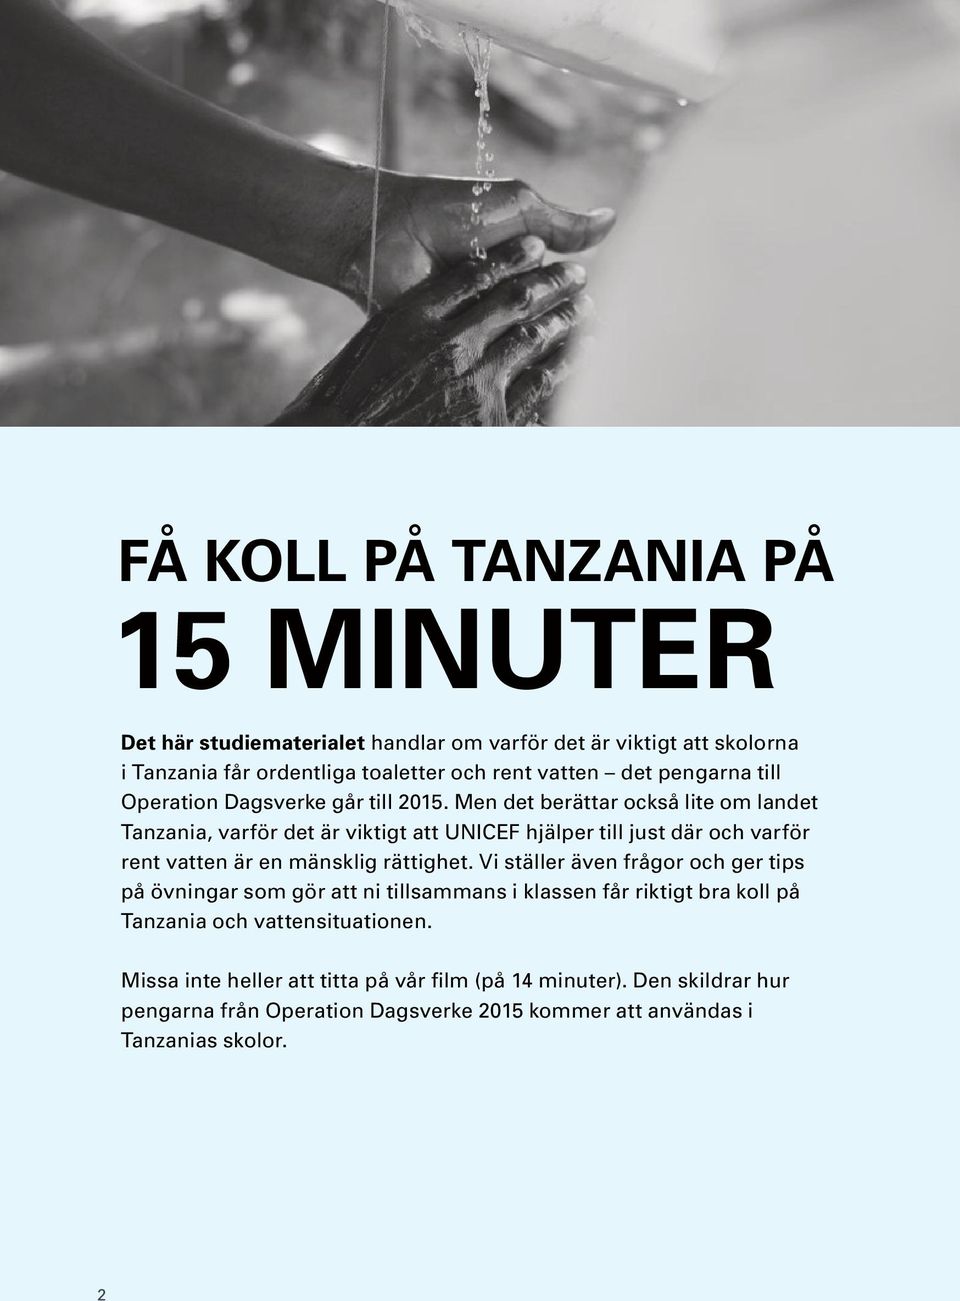 Men det berättar också lite om landet Tanzania, varför det är viktigt att UNICEF hjälper till just där och varför rent vatten är en mänsklig rättighet.